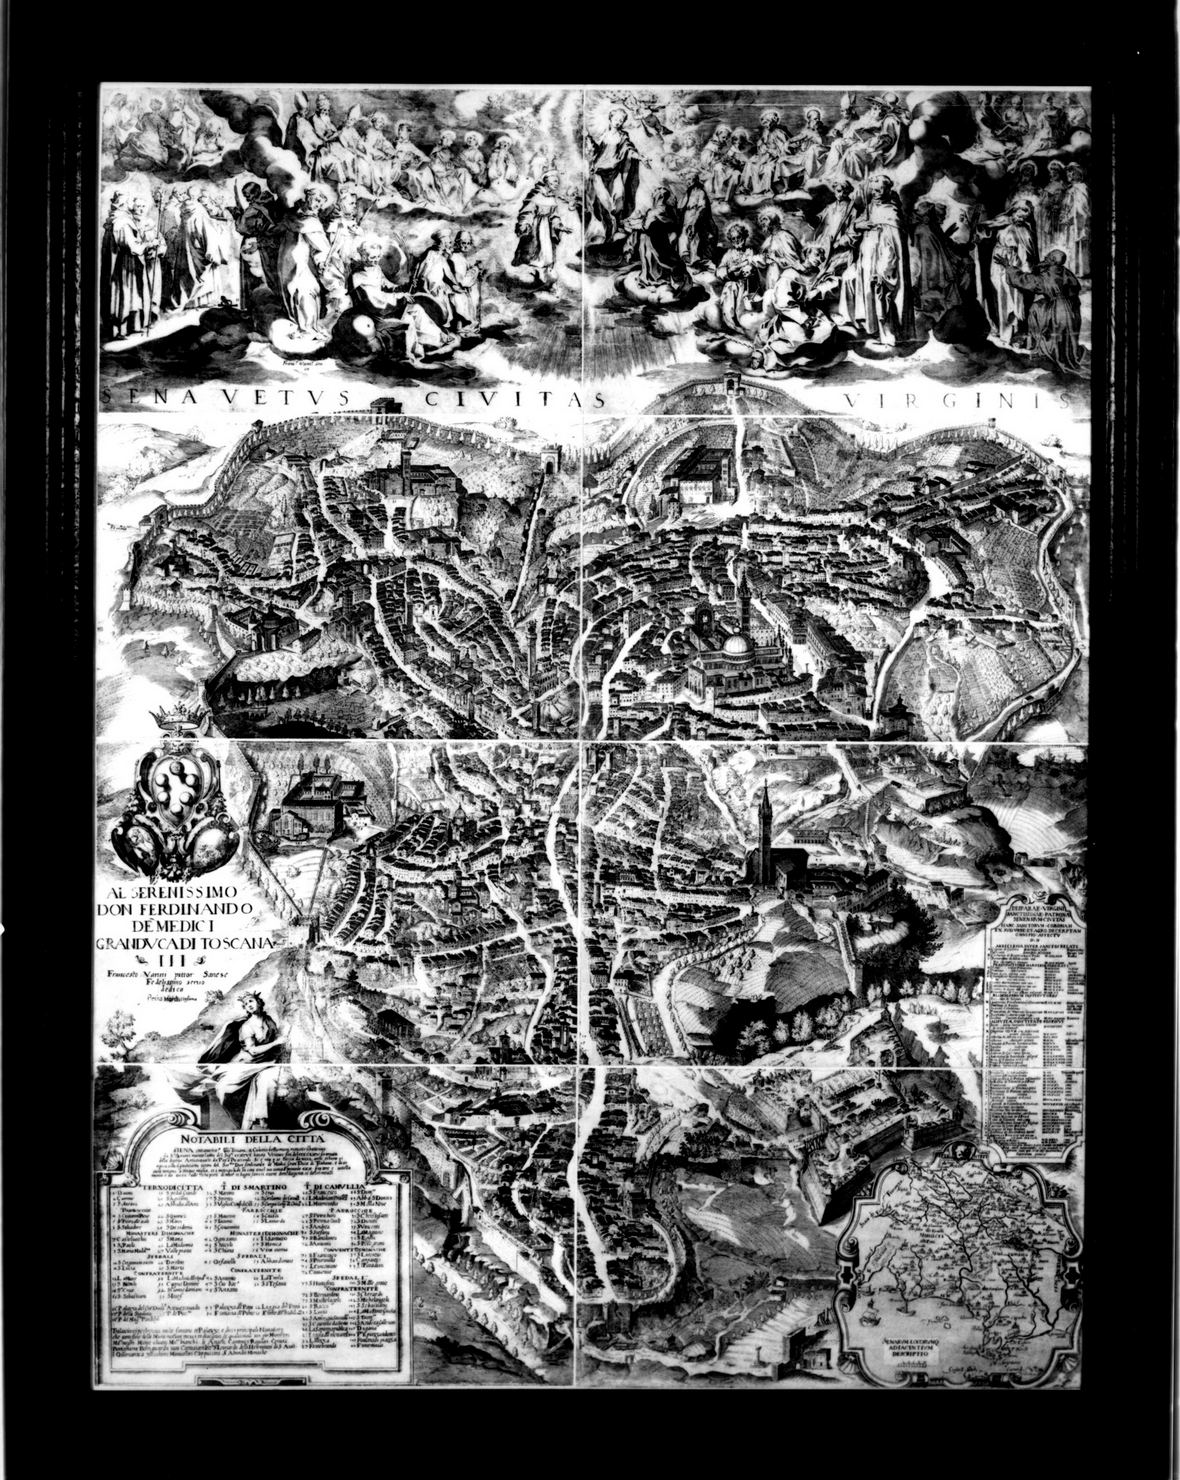 Sena vetus civitas virginis, veduta di Siena (stampa) di Vanni Francesco, Jode Pieter de (sec. XVI)